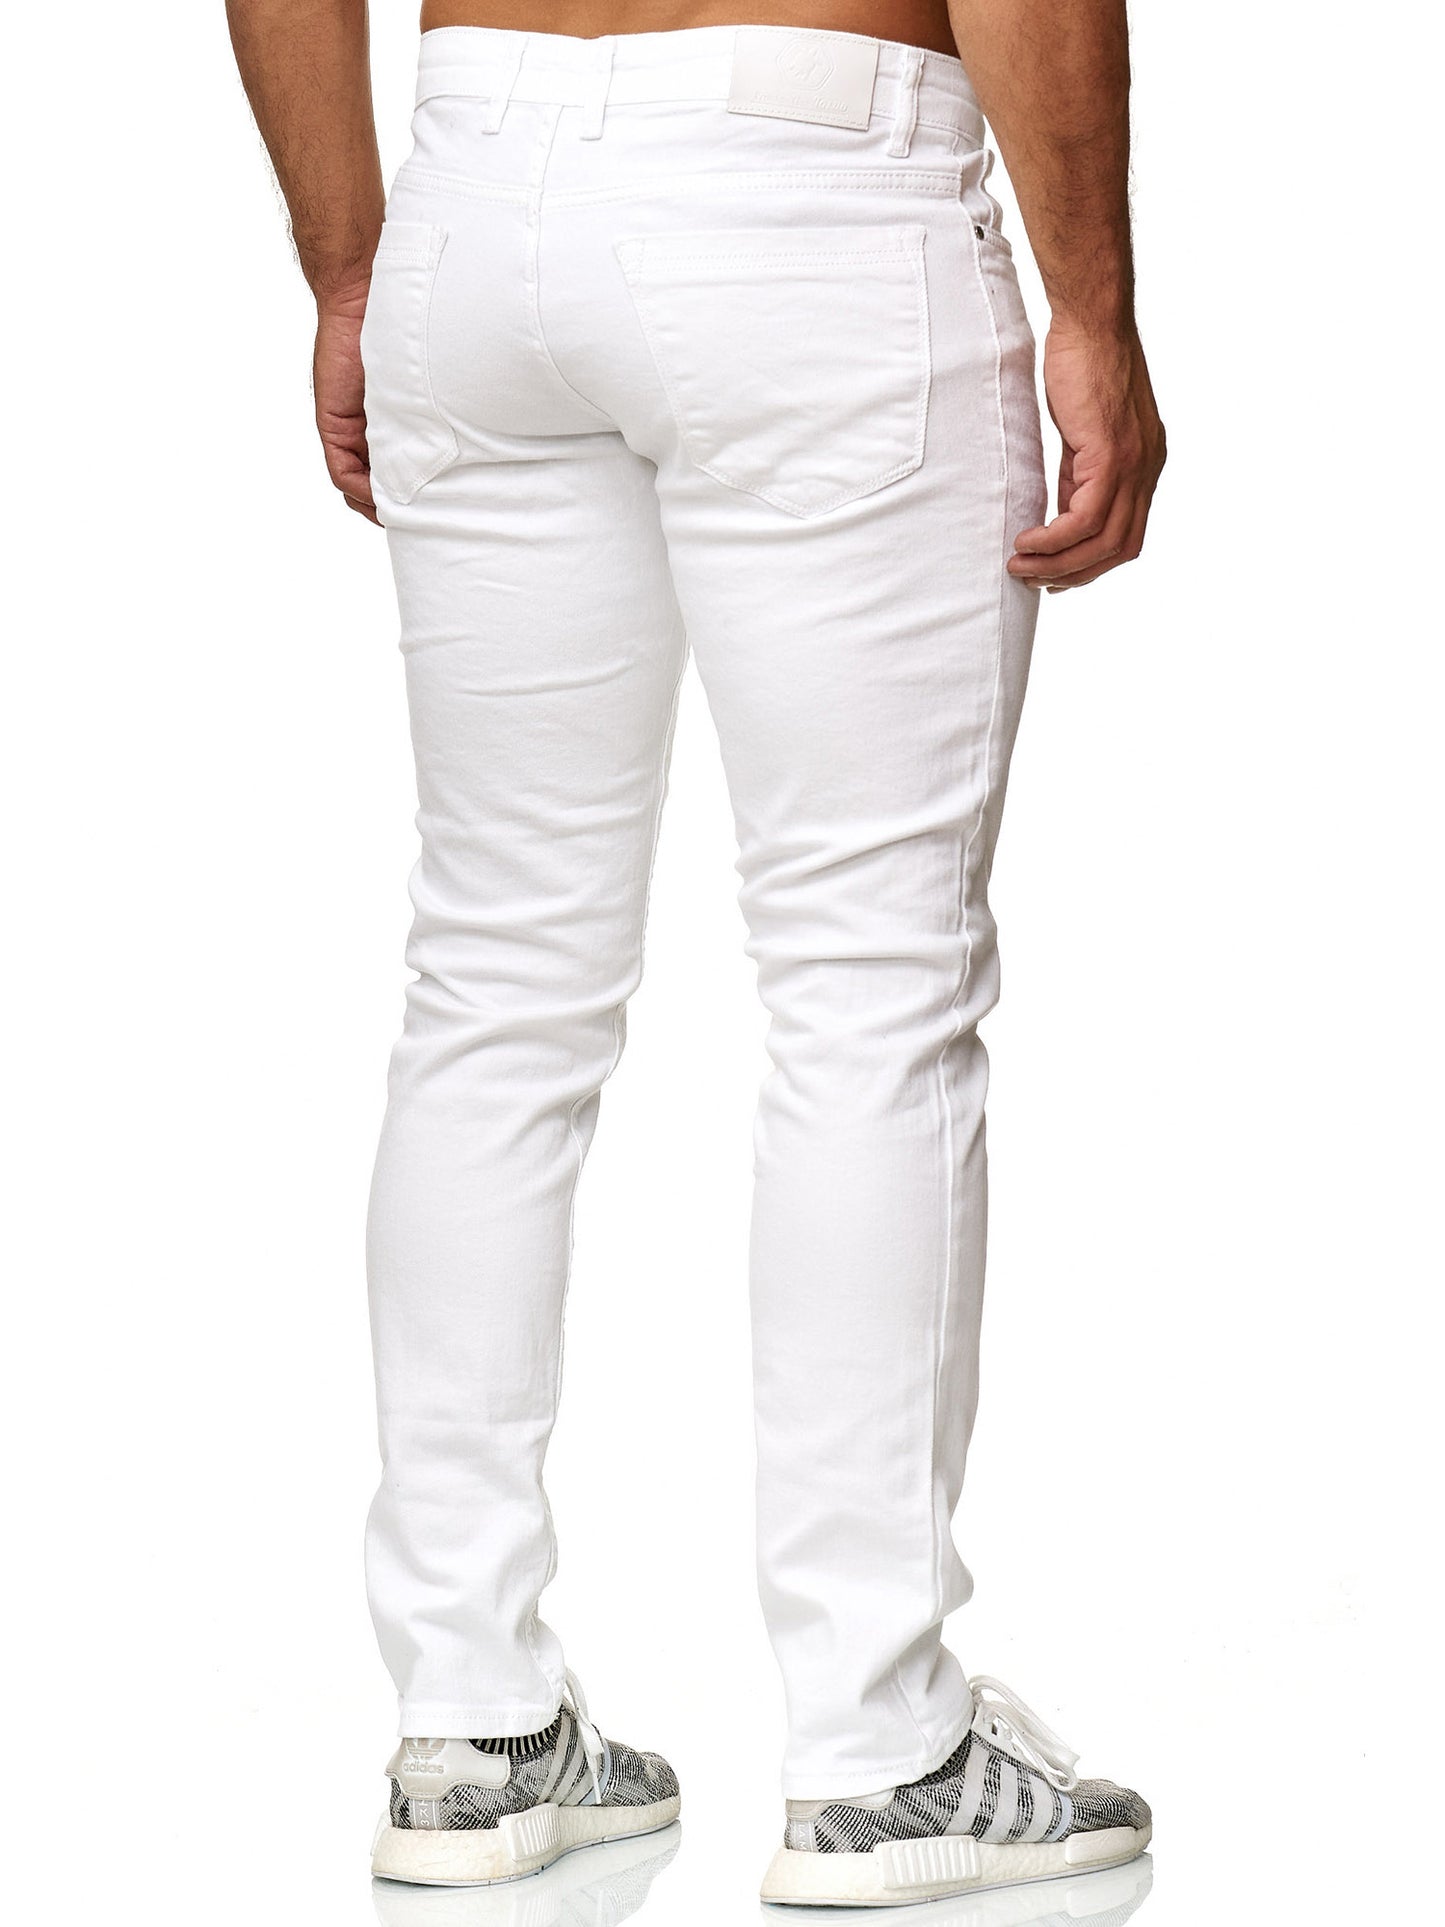 Tazzio Herren Jeans Slim Fit 16533 Weiß